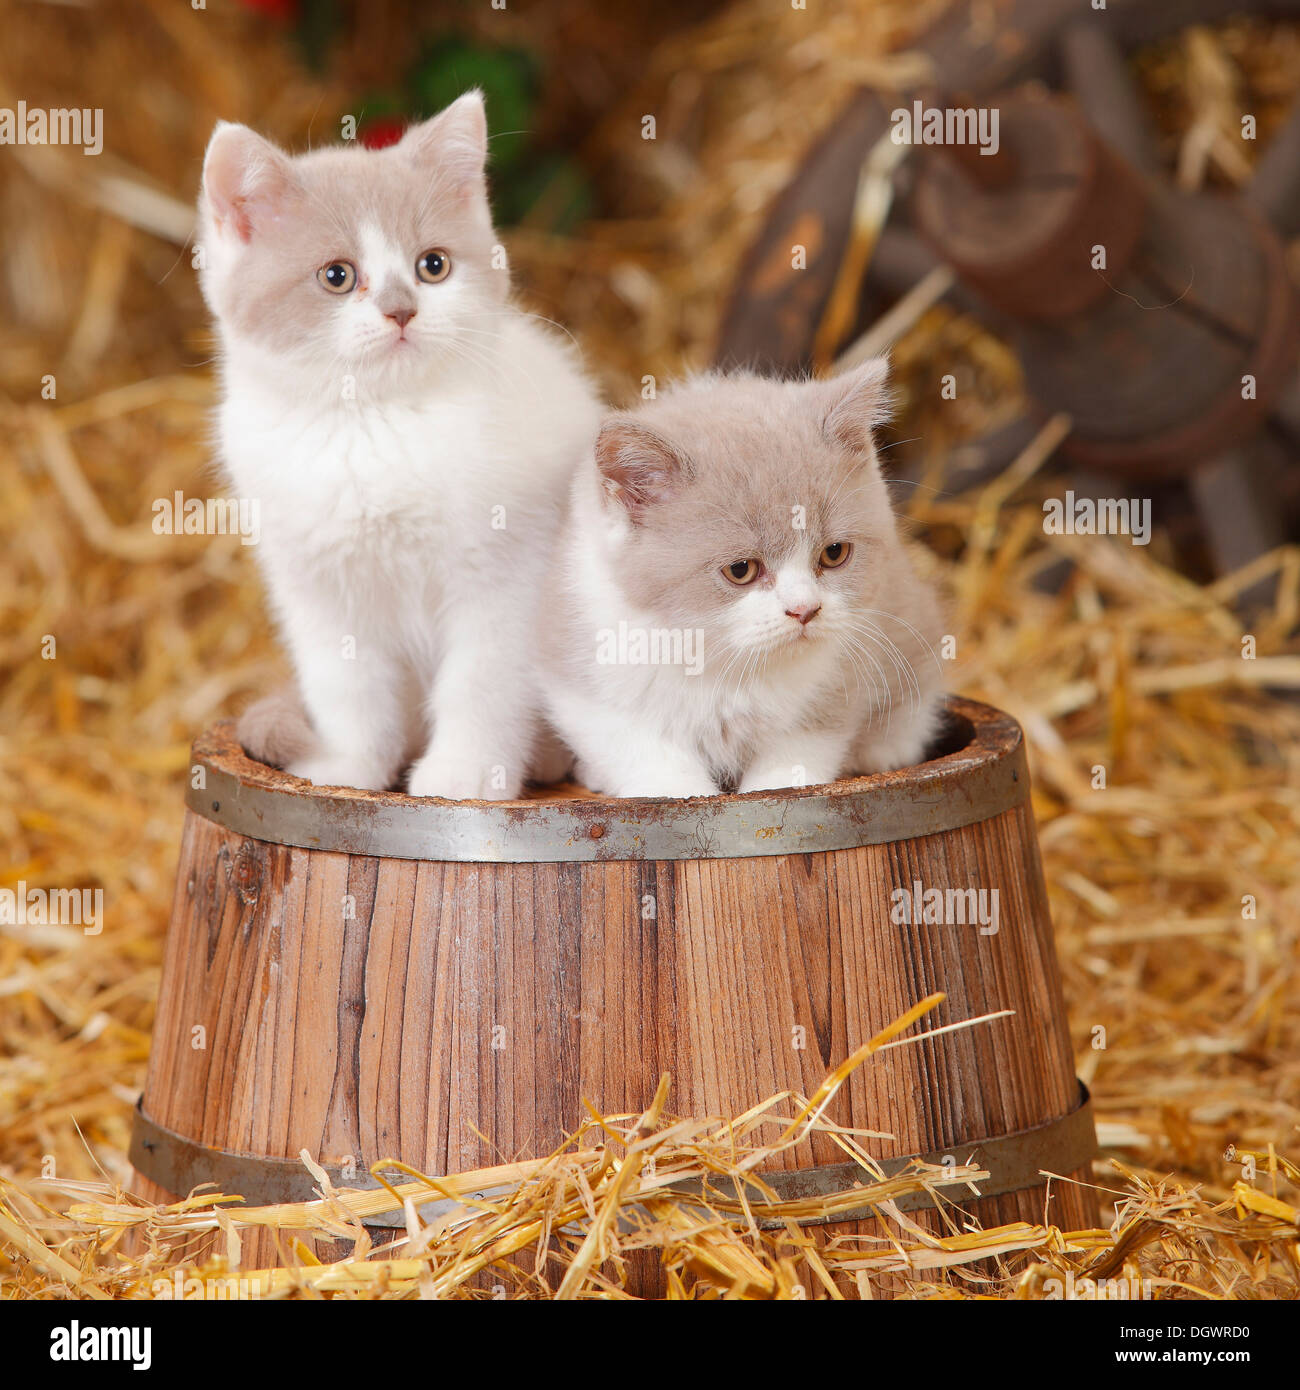 https://c8.alamy.com/comp/DGWRD0/british-shorthair-cats-kittens-10-weeks-lilac-white-britische-kurzhaarkatzen-DGWRD0.jpg